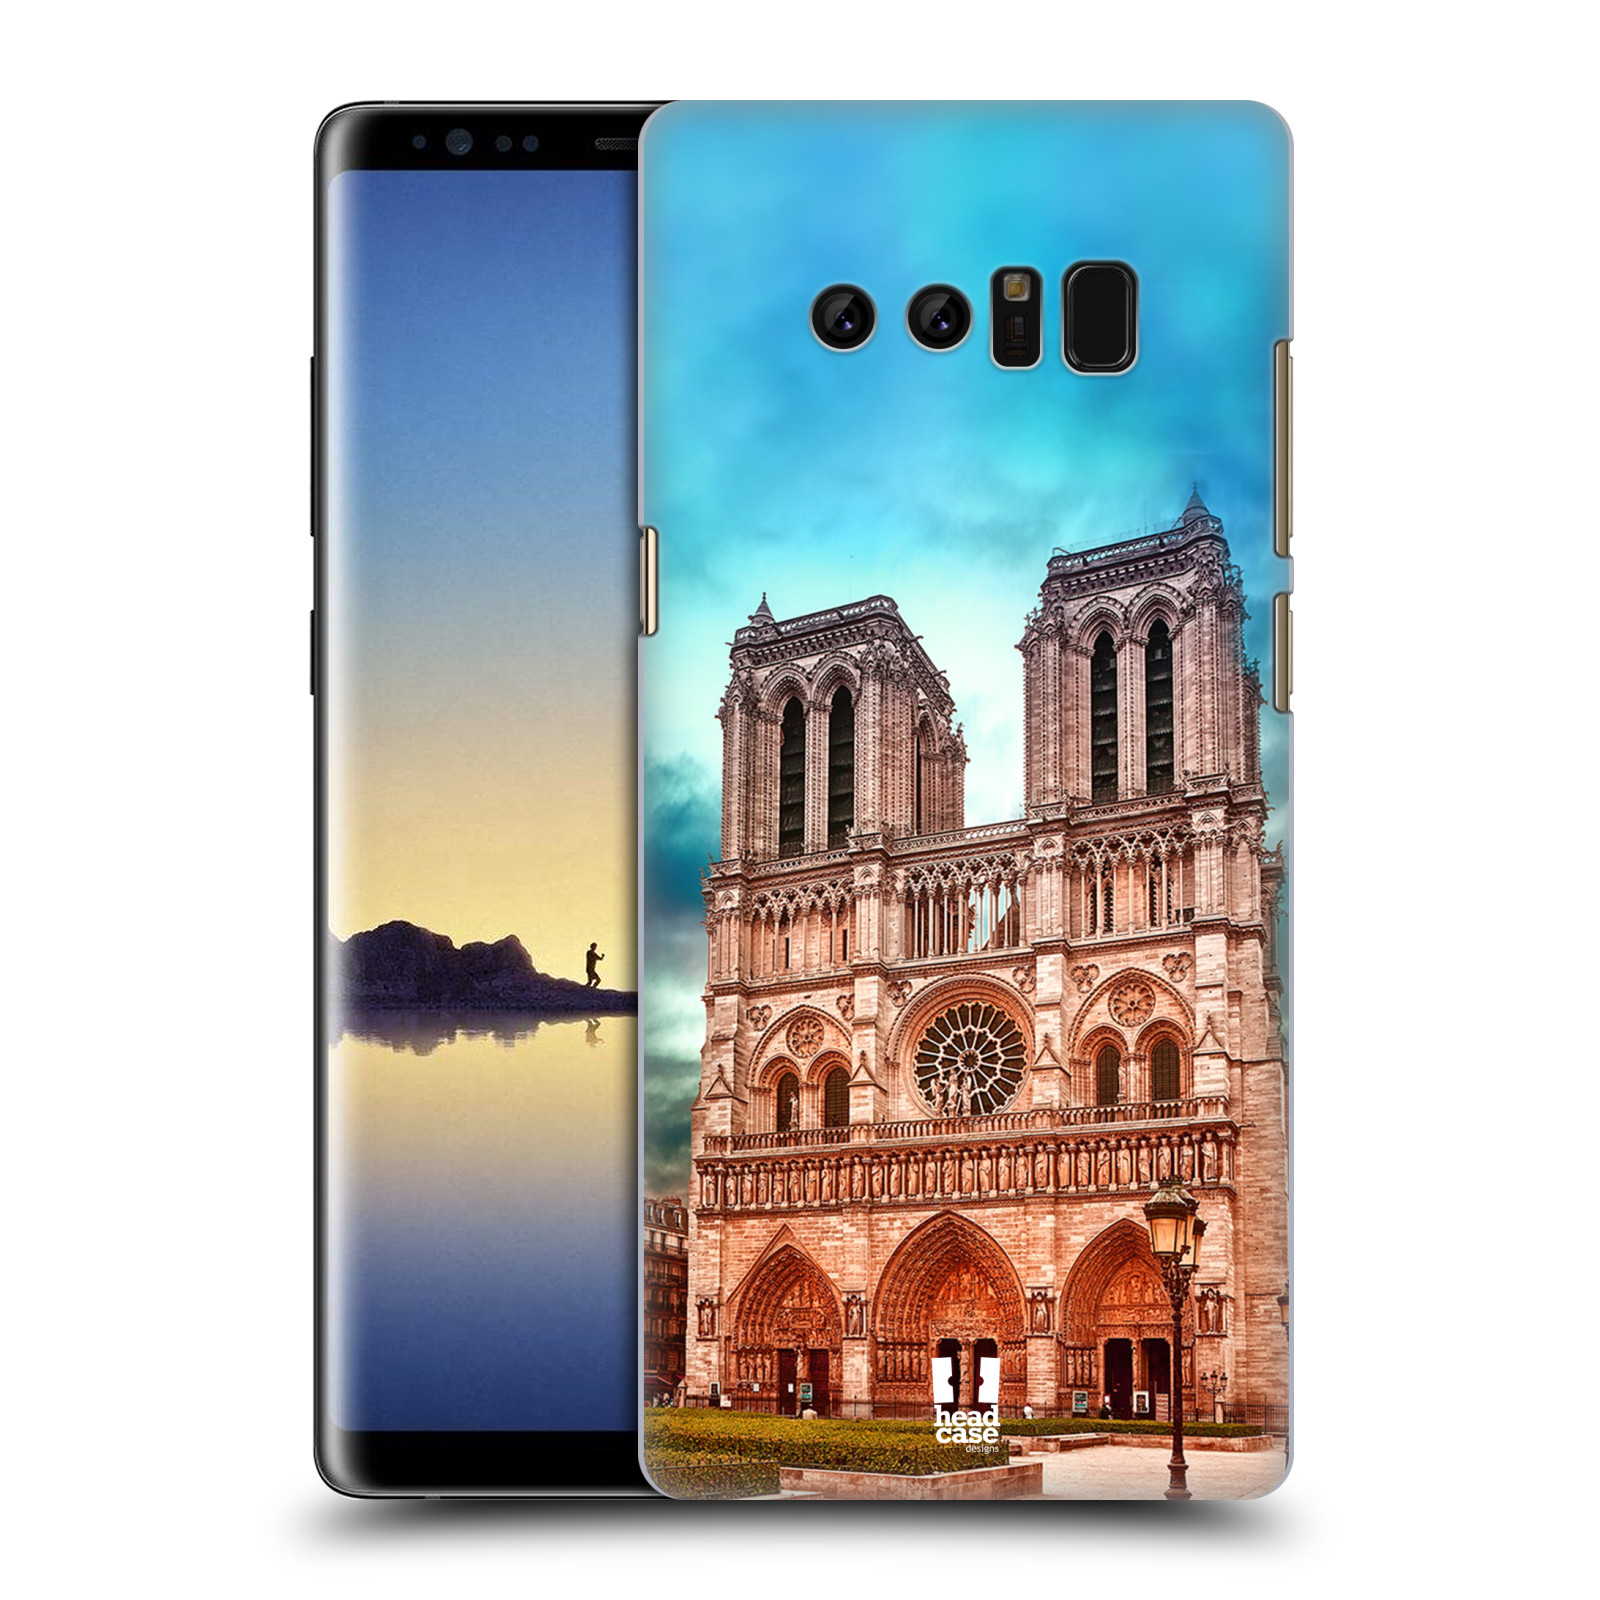 Pouzdro na mobil Samsung Galaxy Note 8 - HEAD CASE - historická místa katedrála Notre Dame